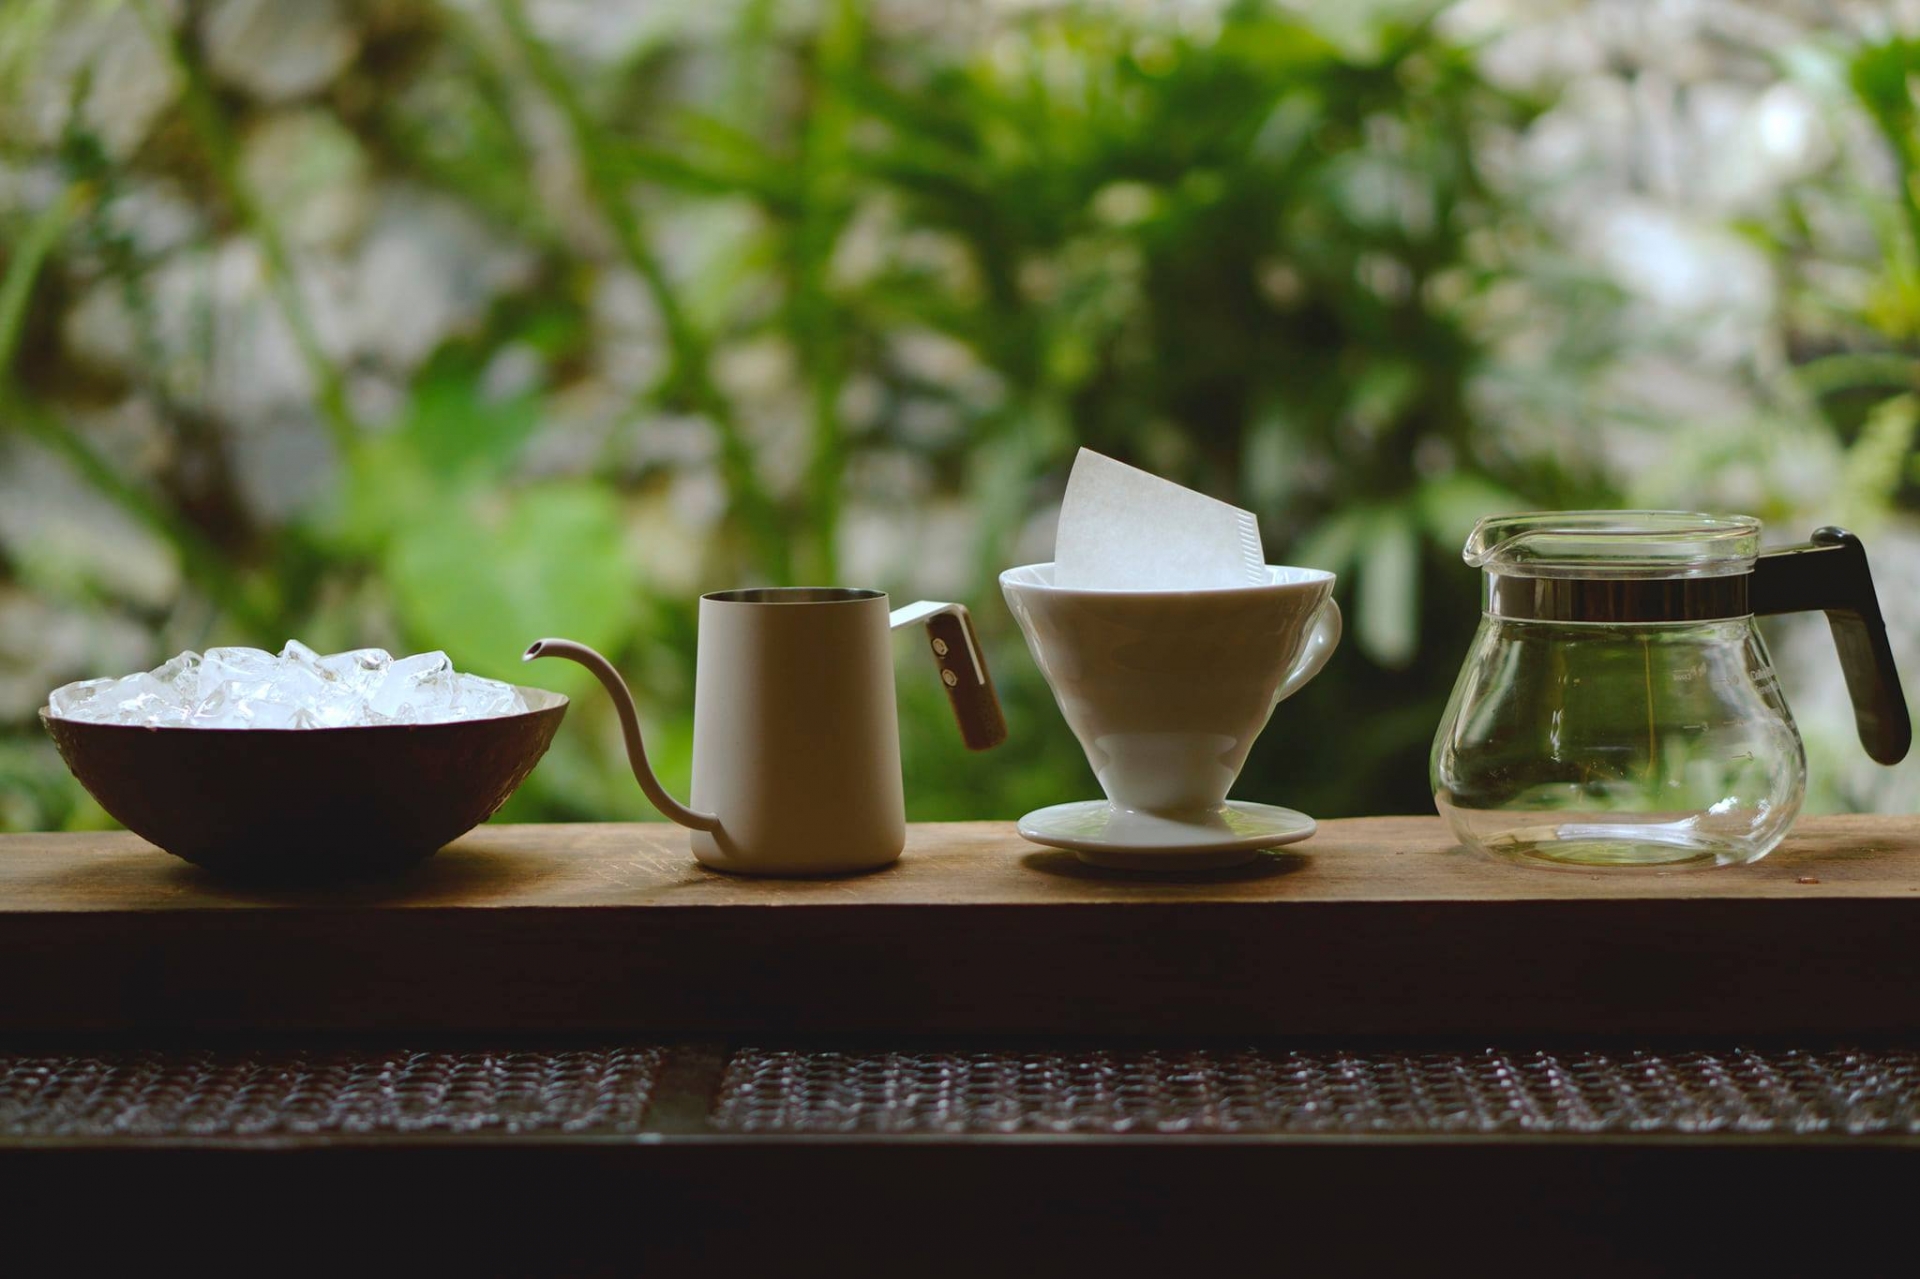 Cách làm trà ủ lạnh - trà coldbrew cực đơn giản mà ngon ngay tại nhà - Ảnh 1